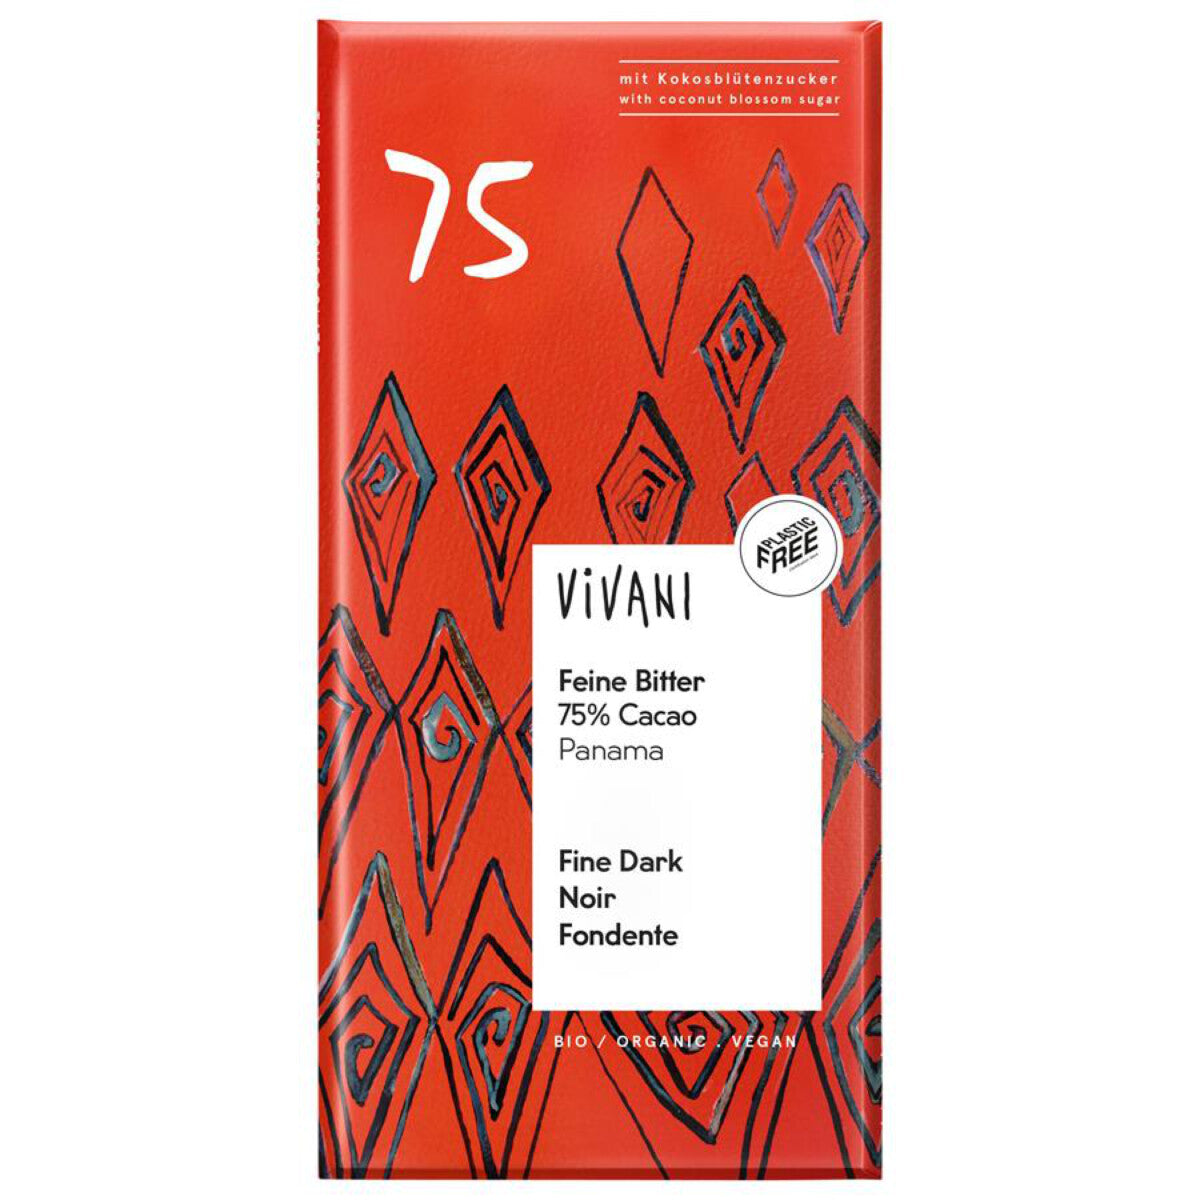 VIVANI Feine Bitter 75% Cacao Panama - 80 g